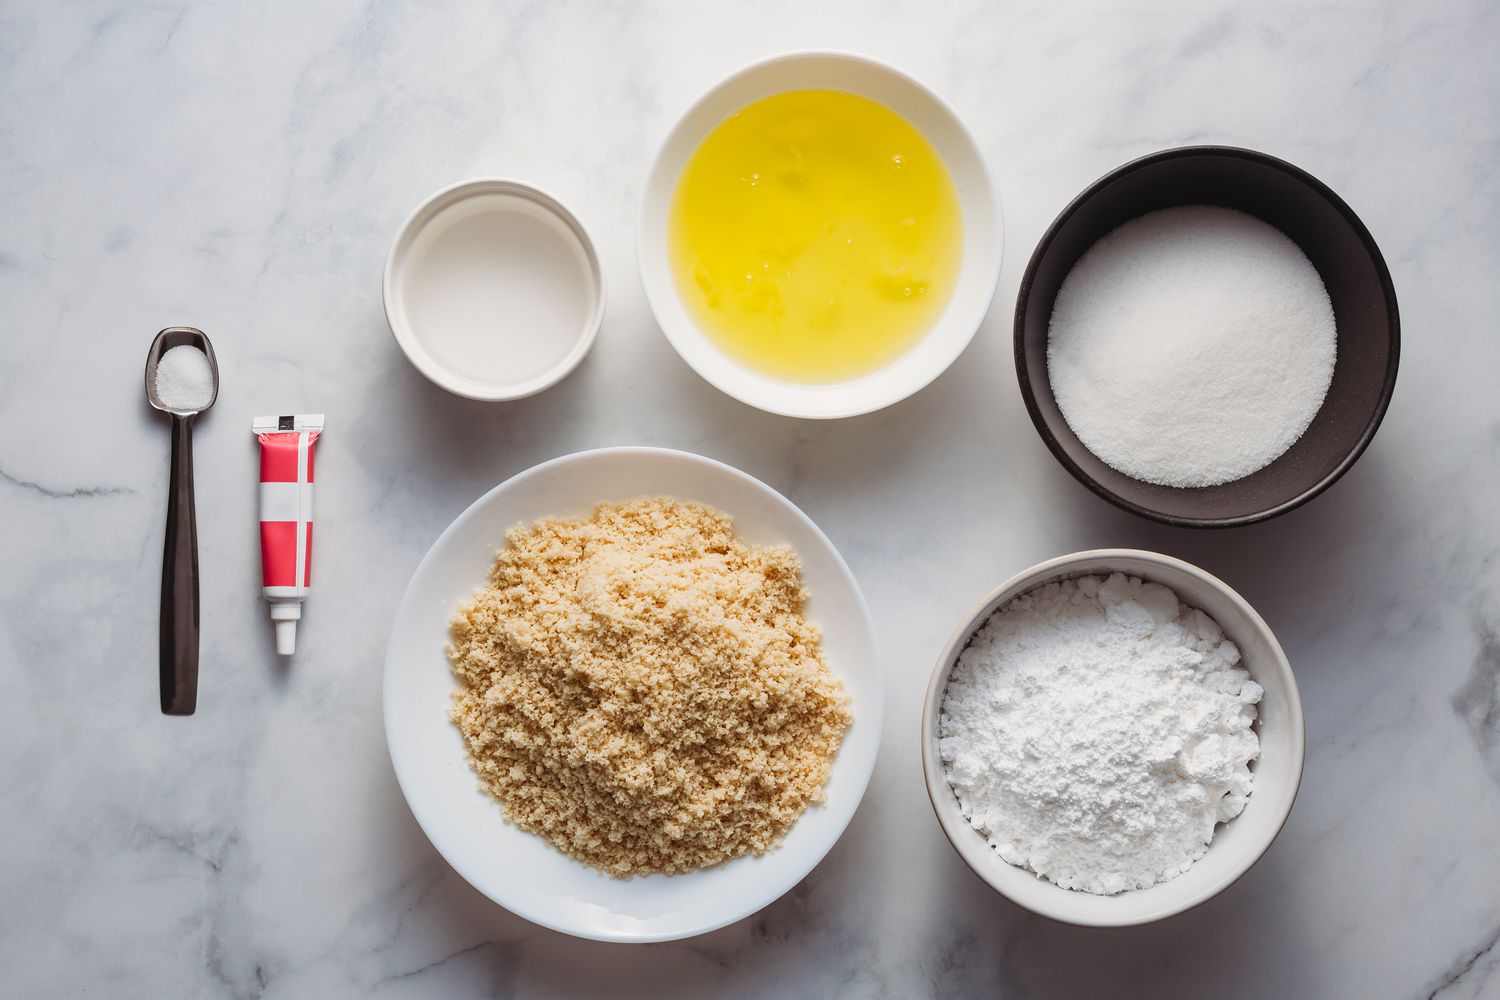 Ingredients for macaron recipe gathered